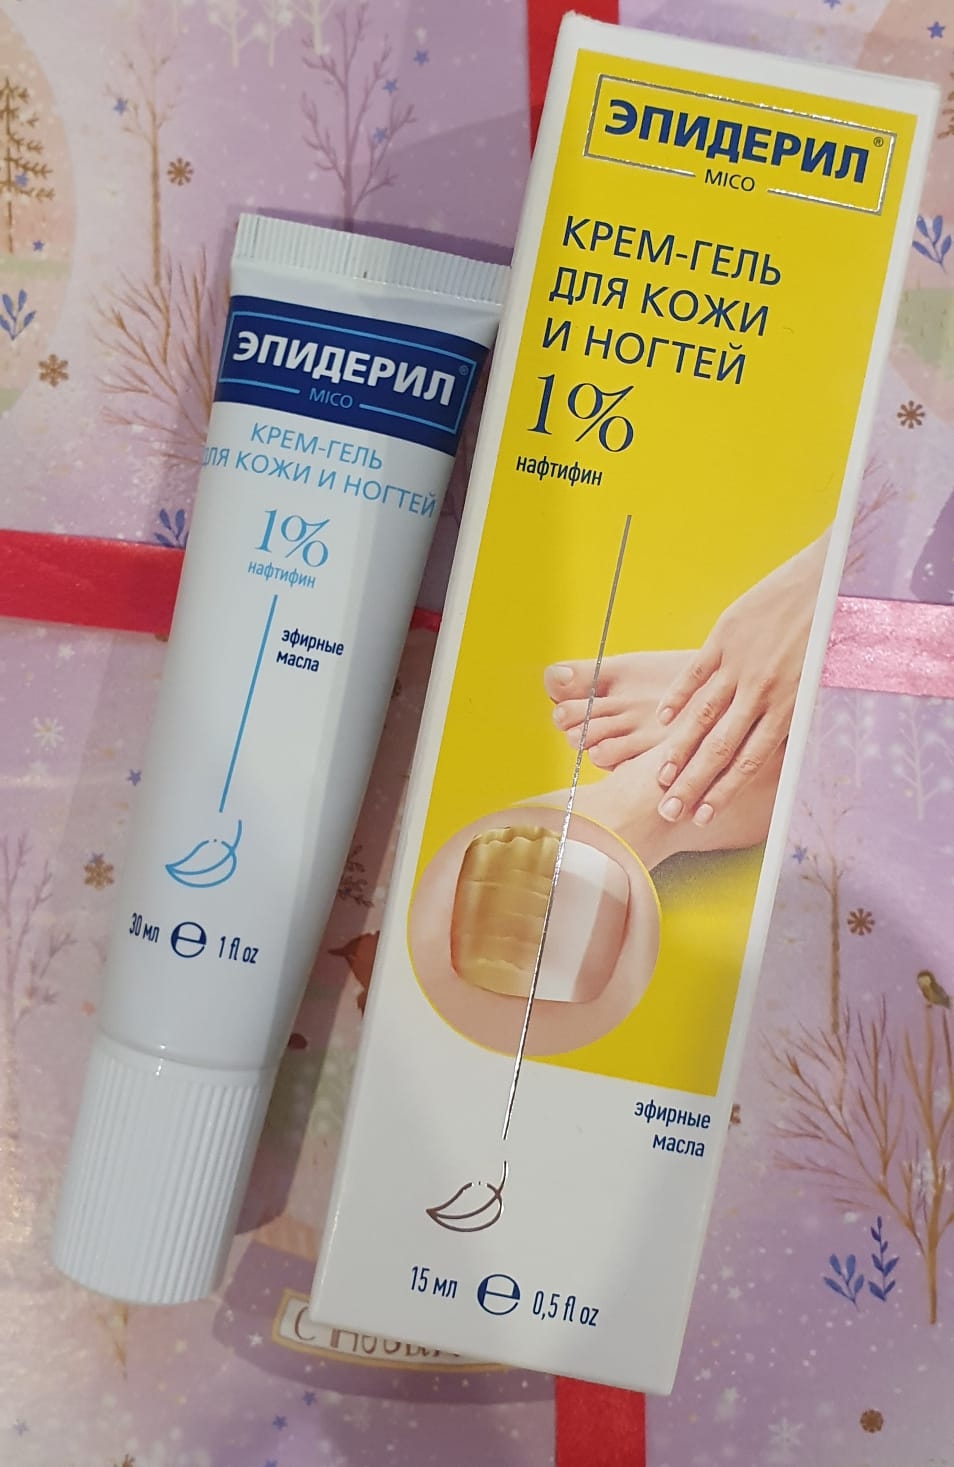 Крем-гель для кожи и ногтей Эпидерил MICO - Лучшее средство против грибка.